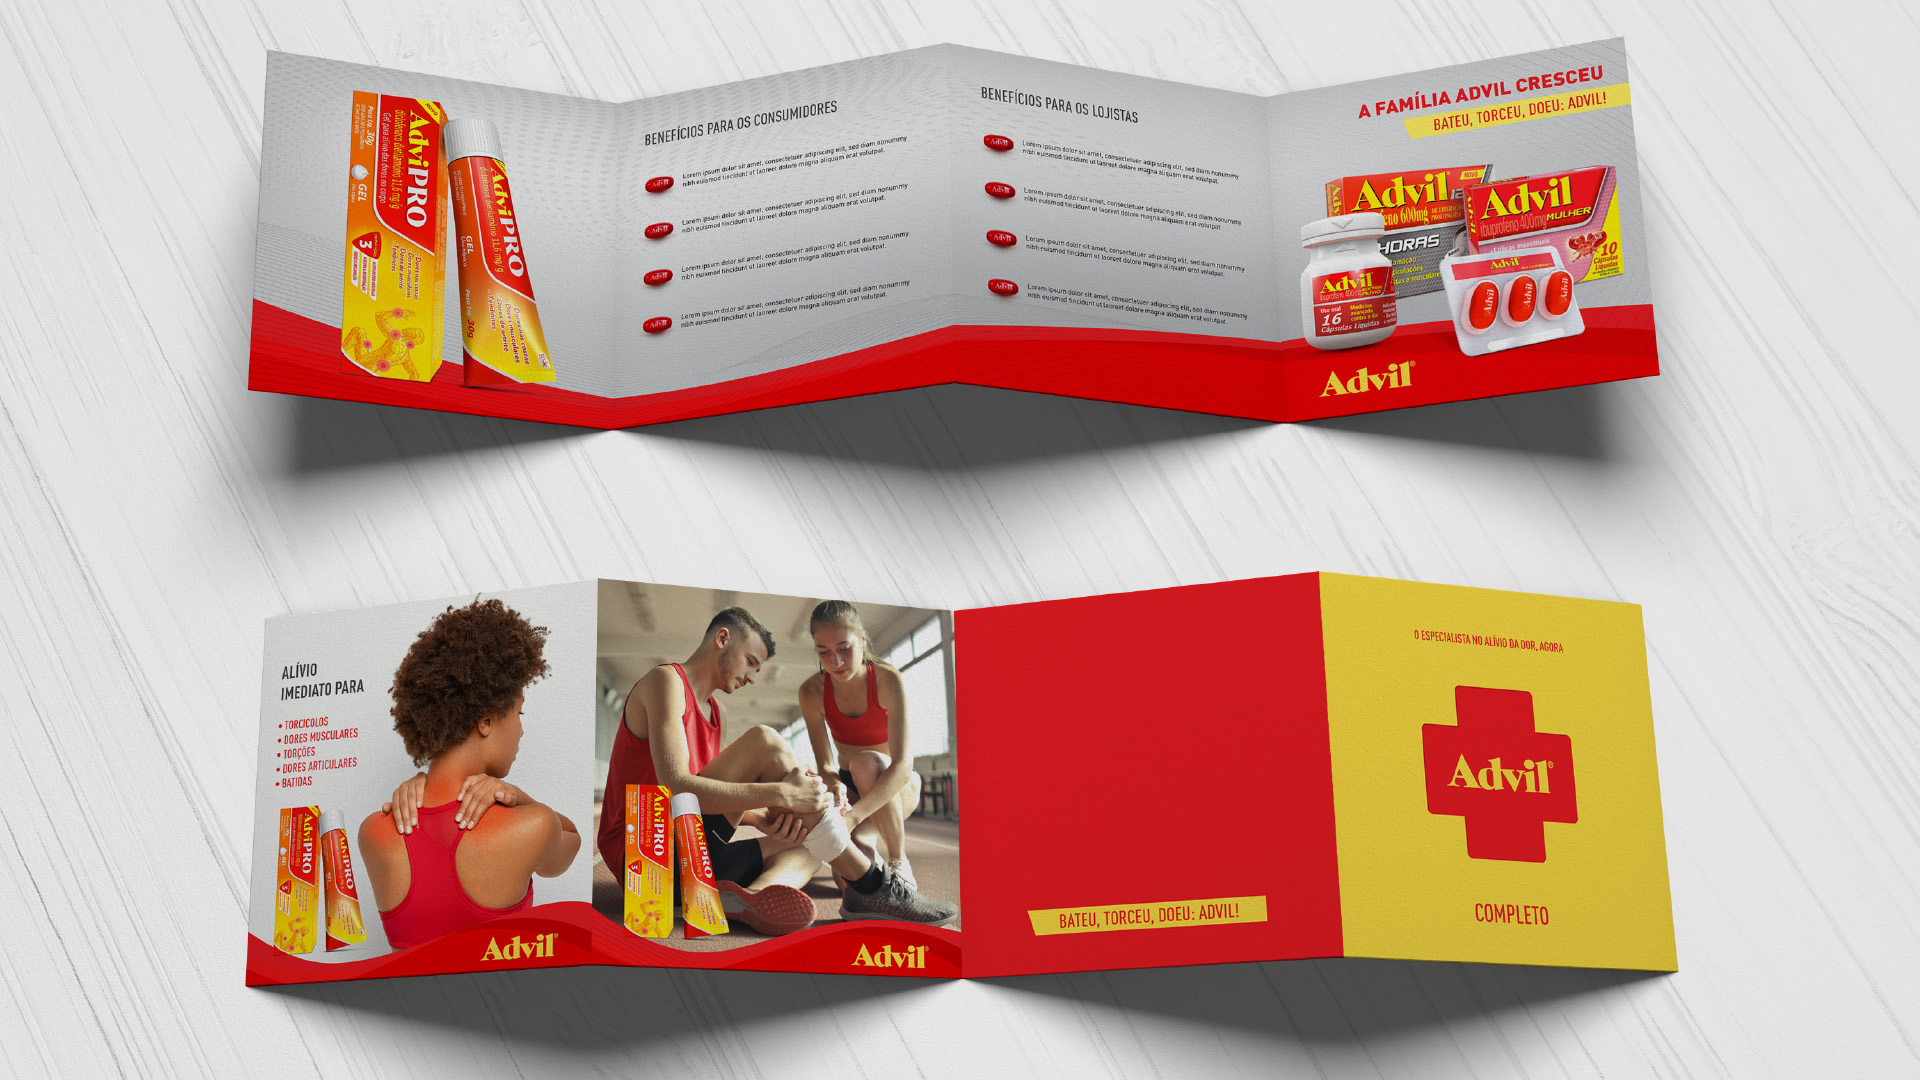 Imagem do case sales kit de lançamento do Advil Gel desenvolvida pelo Estúdio E | Agência de Comunicação para a GSK